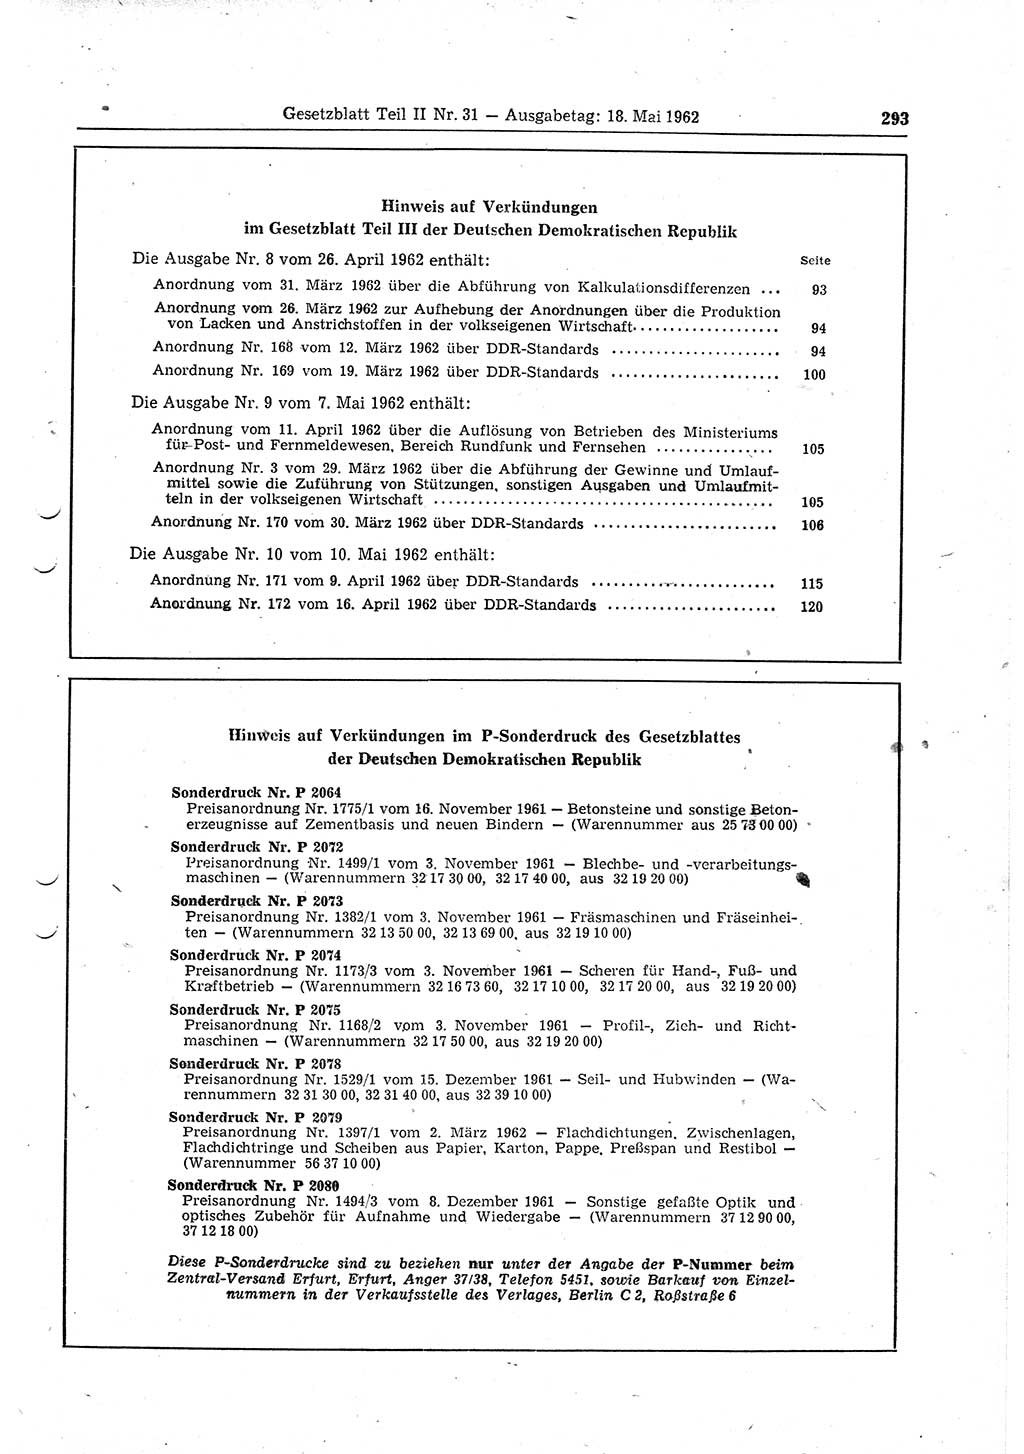 Gesetzblatt (GBl.) der Deutschen Demokratischen Republik (DDR) Teil ⅠⅠ 1962, Seite 293 (GBl. DDR ⅠⅠ 1962, S. 293)